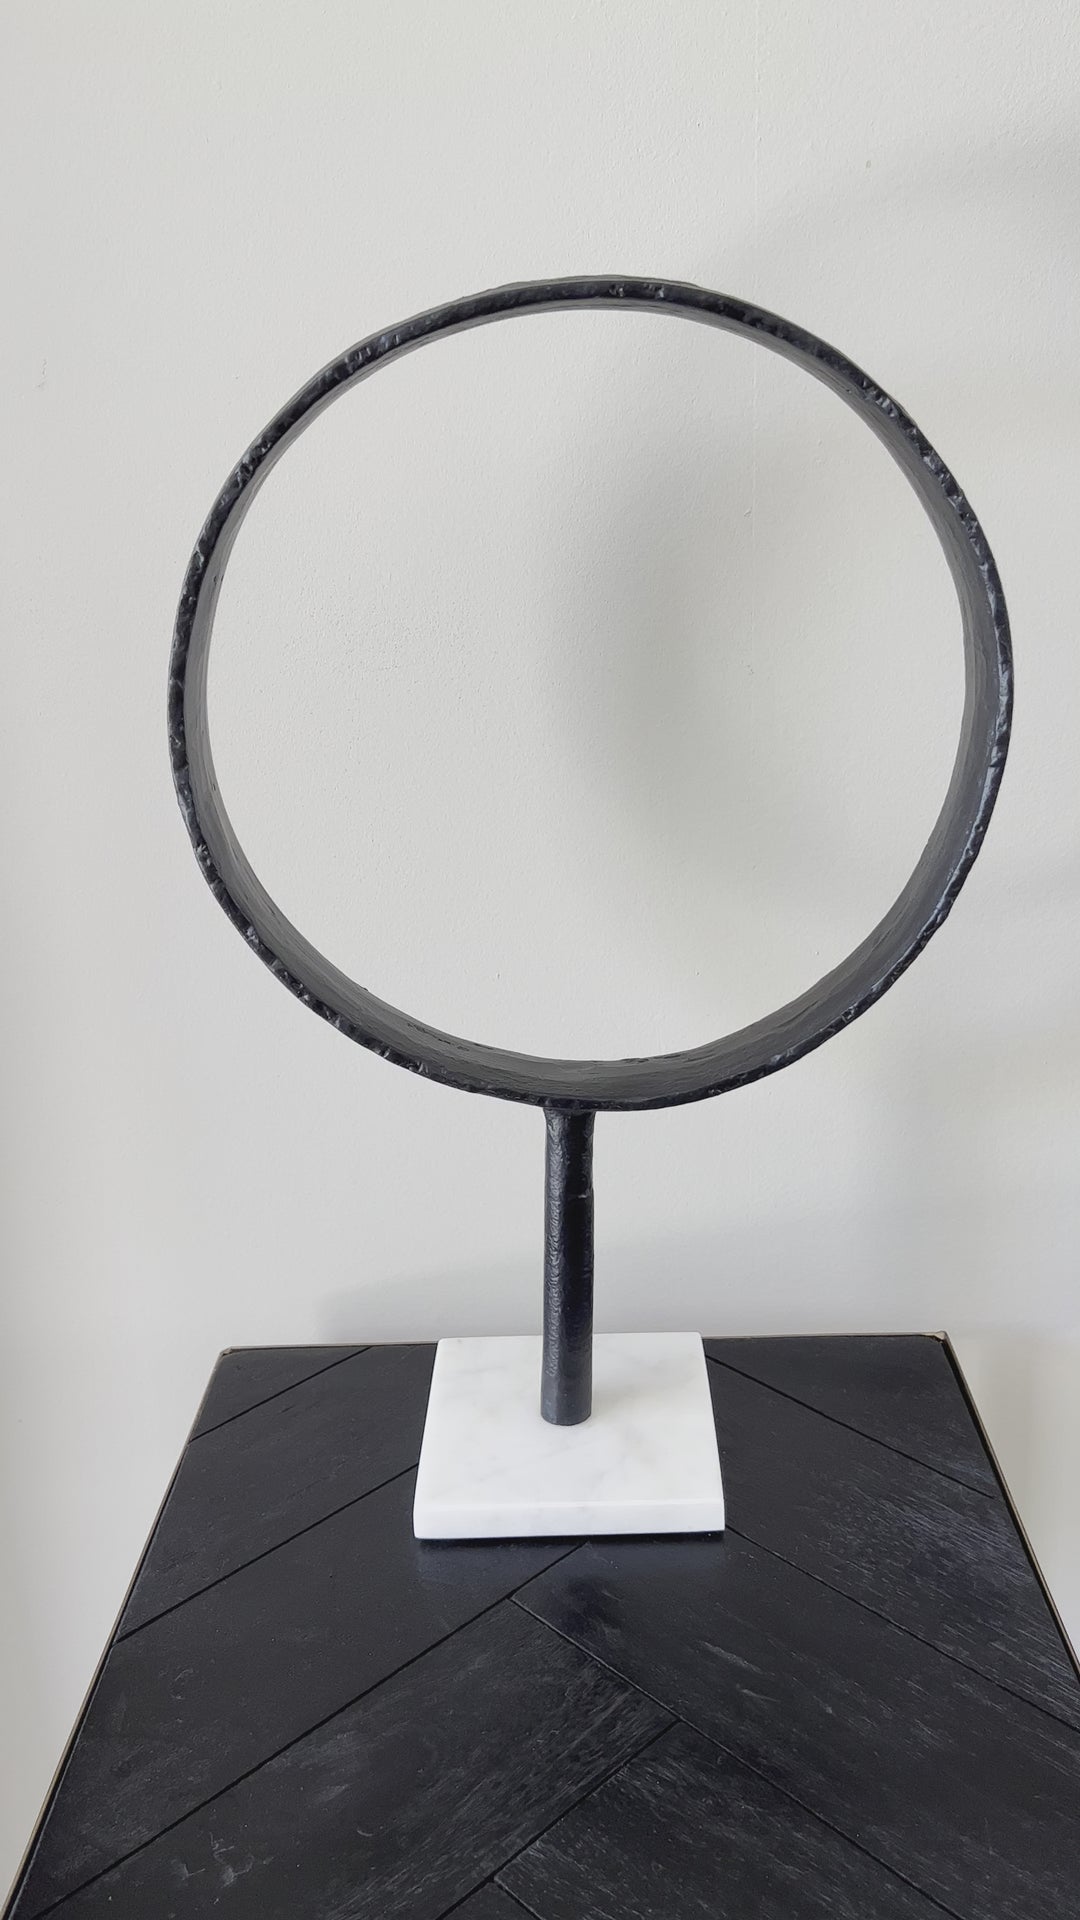 Zwarte metalen ring op marmeren voet - zwart/wit - 43 cm hoog